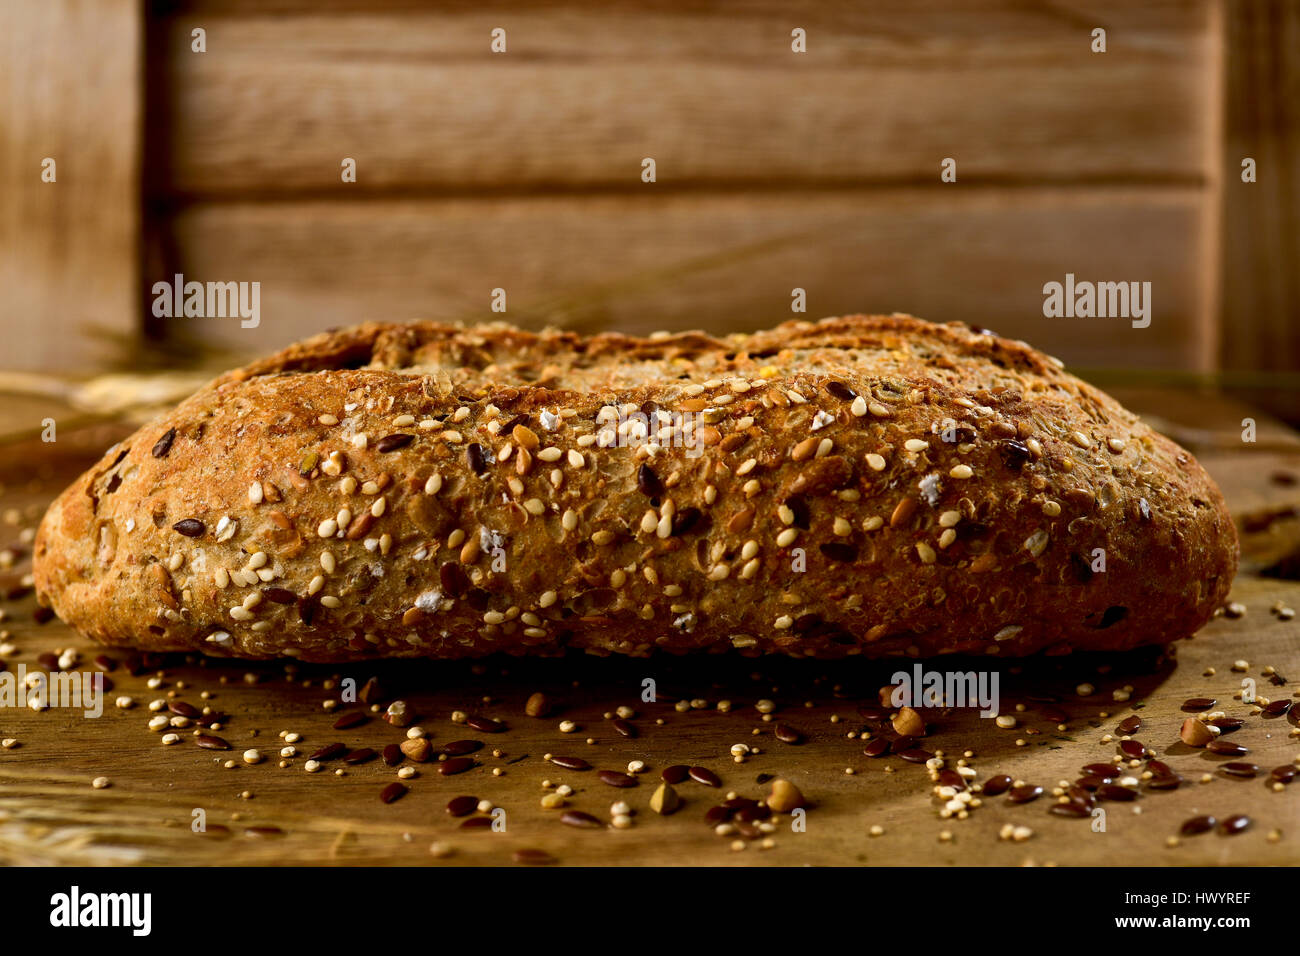 Primo piano di un pane integrale roll e rabboccato con diversi semi come il sesamo e semi di papavero, su una tavola in legno rustico Foto Stock